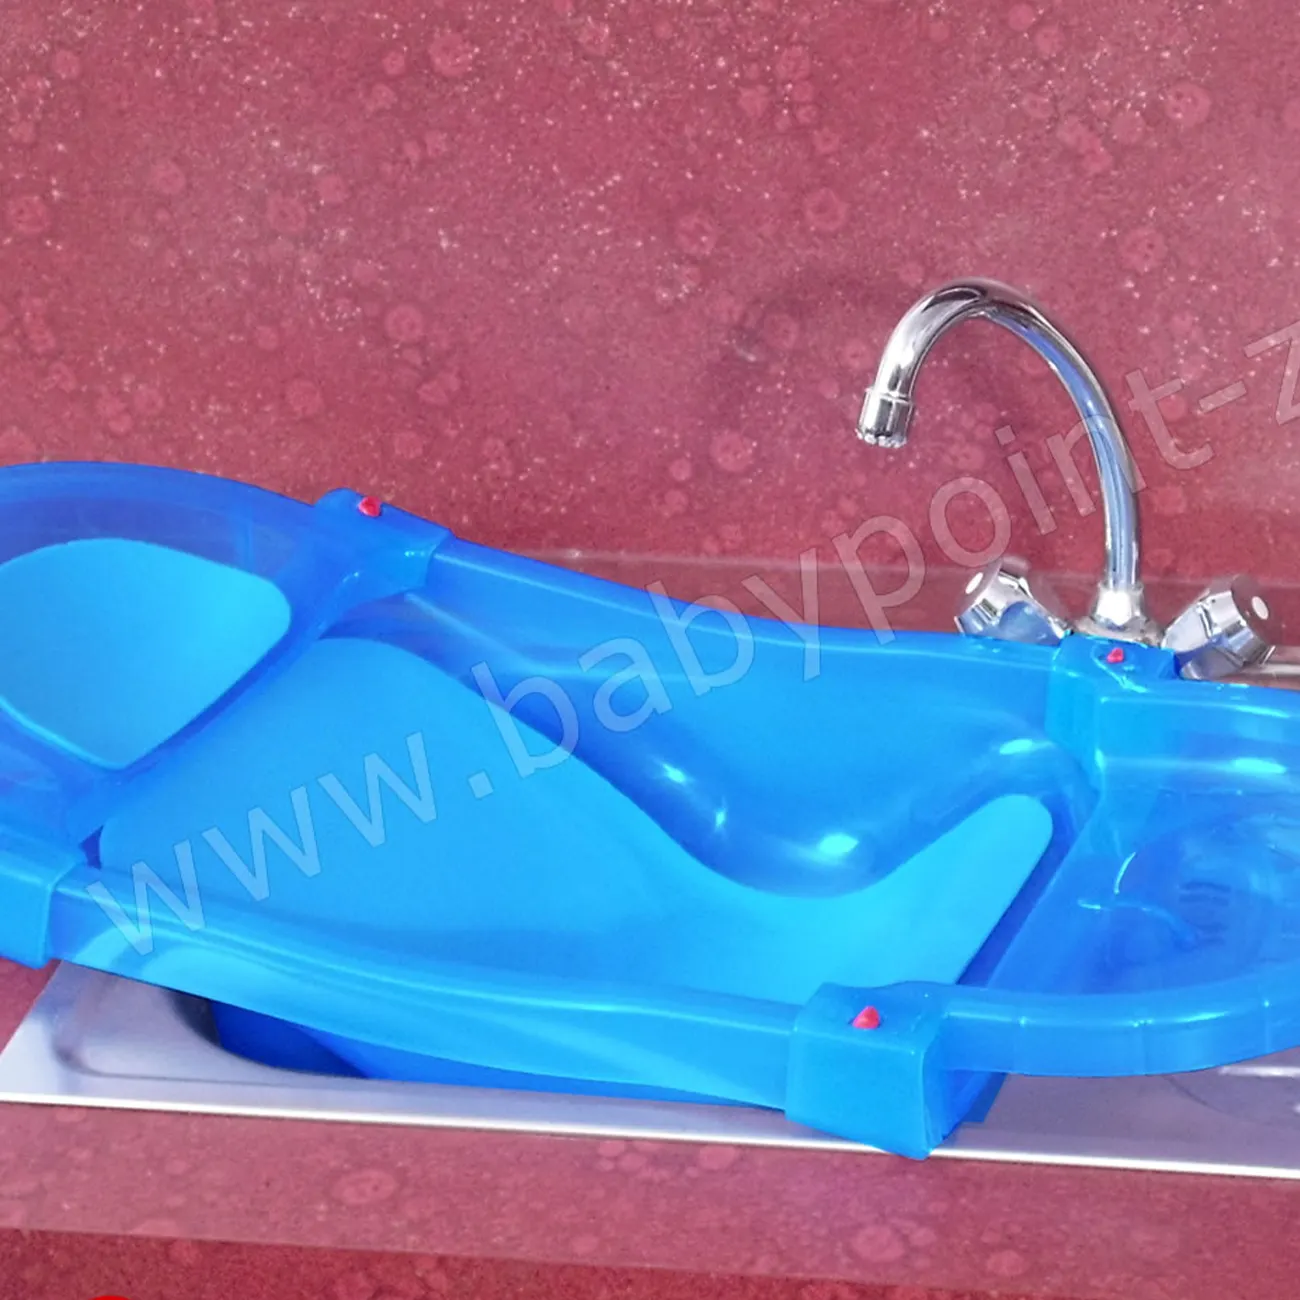 ZEKIWA Baby Badewanne [LEICHT UND ROBUST] das erste Planschbecken für Ihr Baby - Babywanne ausziehbar bs 74cm - bis max 9kg - mit Polsterung - Babywanne Blue